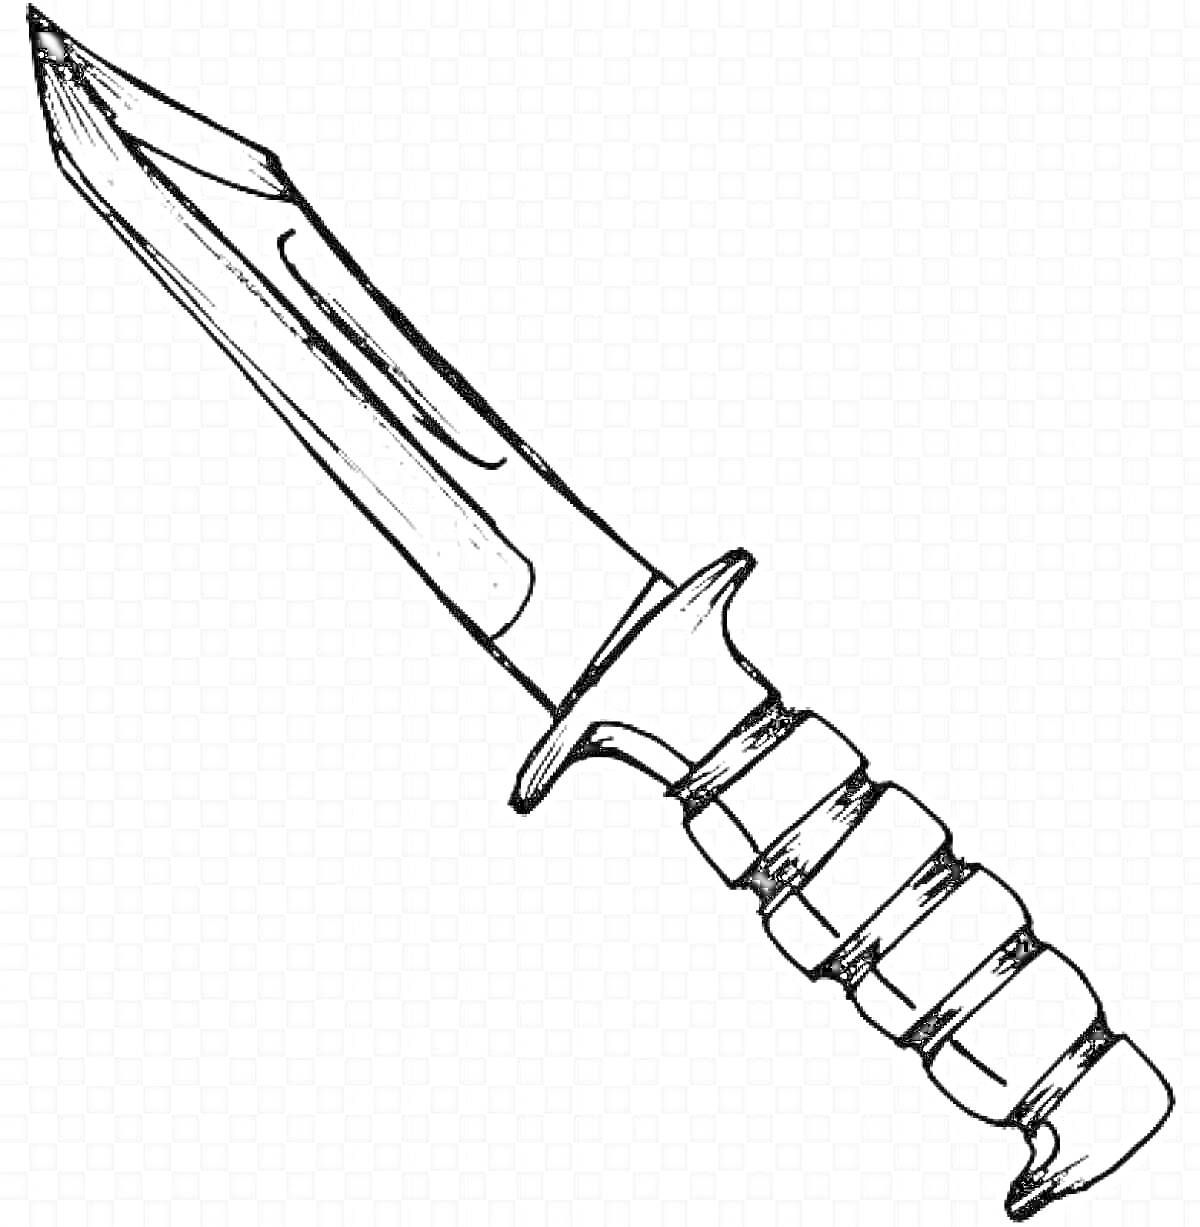 РаскраскаЧертеж ножа из Standoff 2 с тактической рукоятью и клинком, лезвие с характерными выемками и насечками